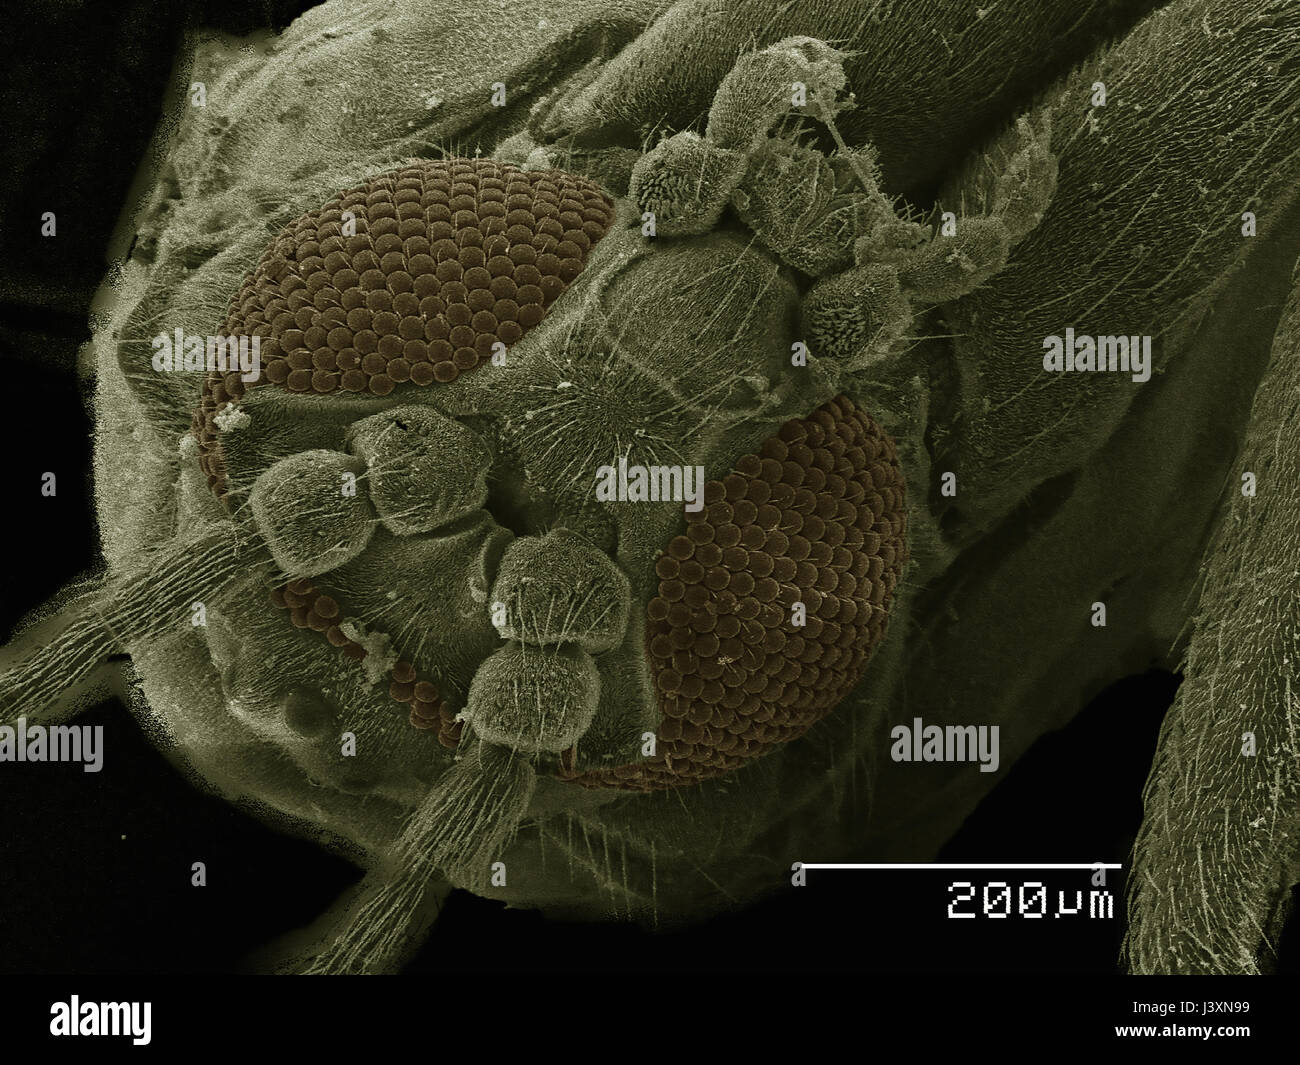 Vue latérale d'un moucheron (Diptera) réalisée en microscopie électronique Banque D'Images